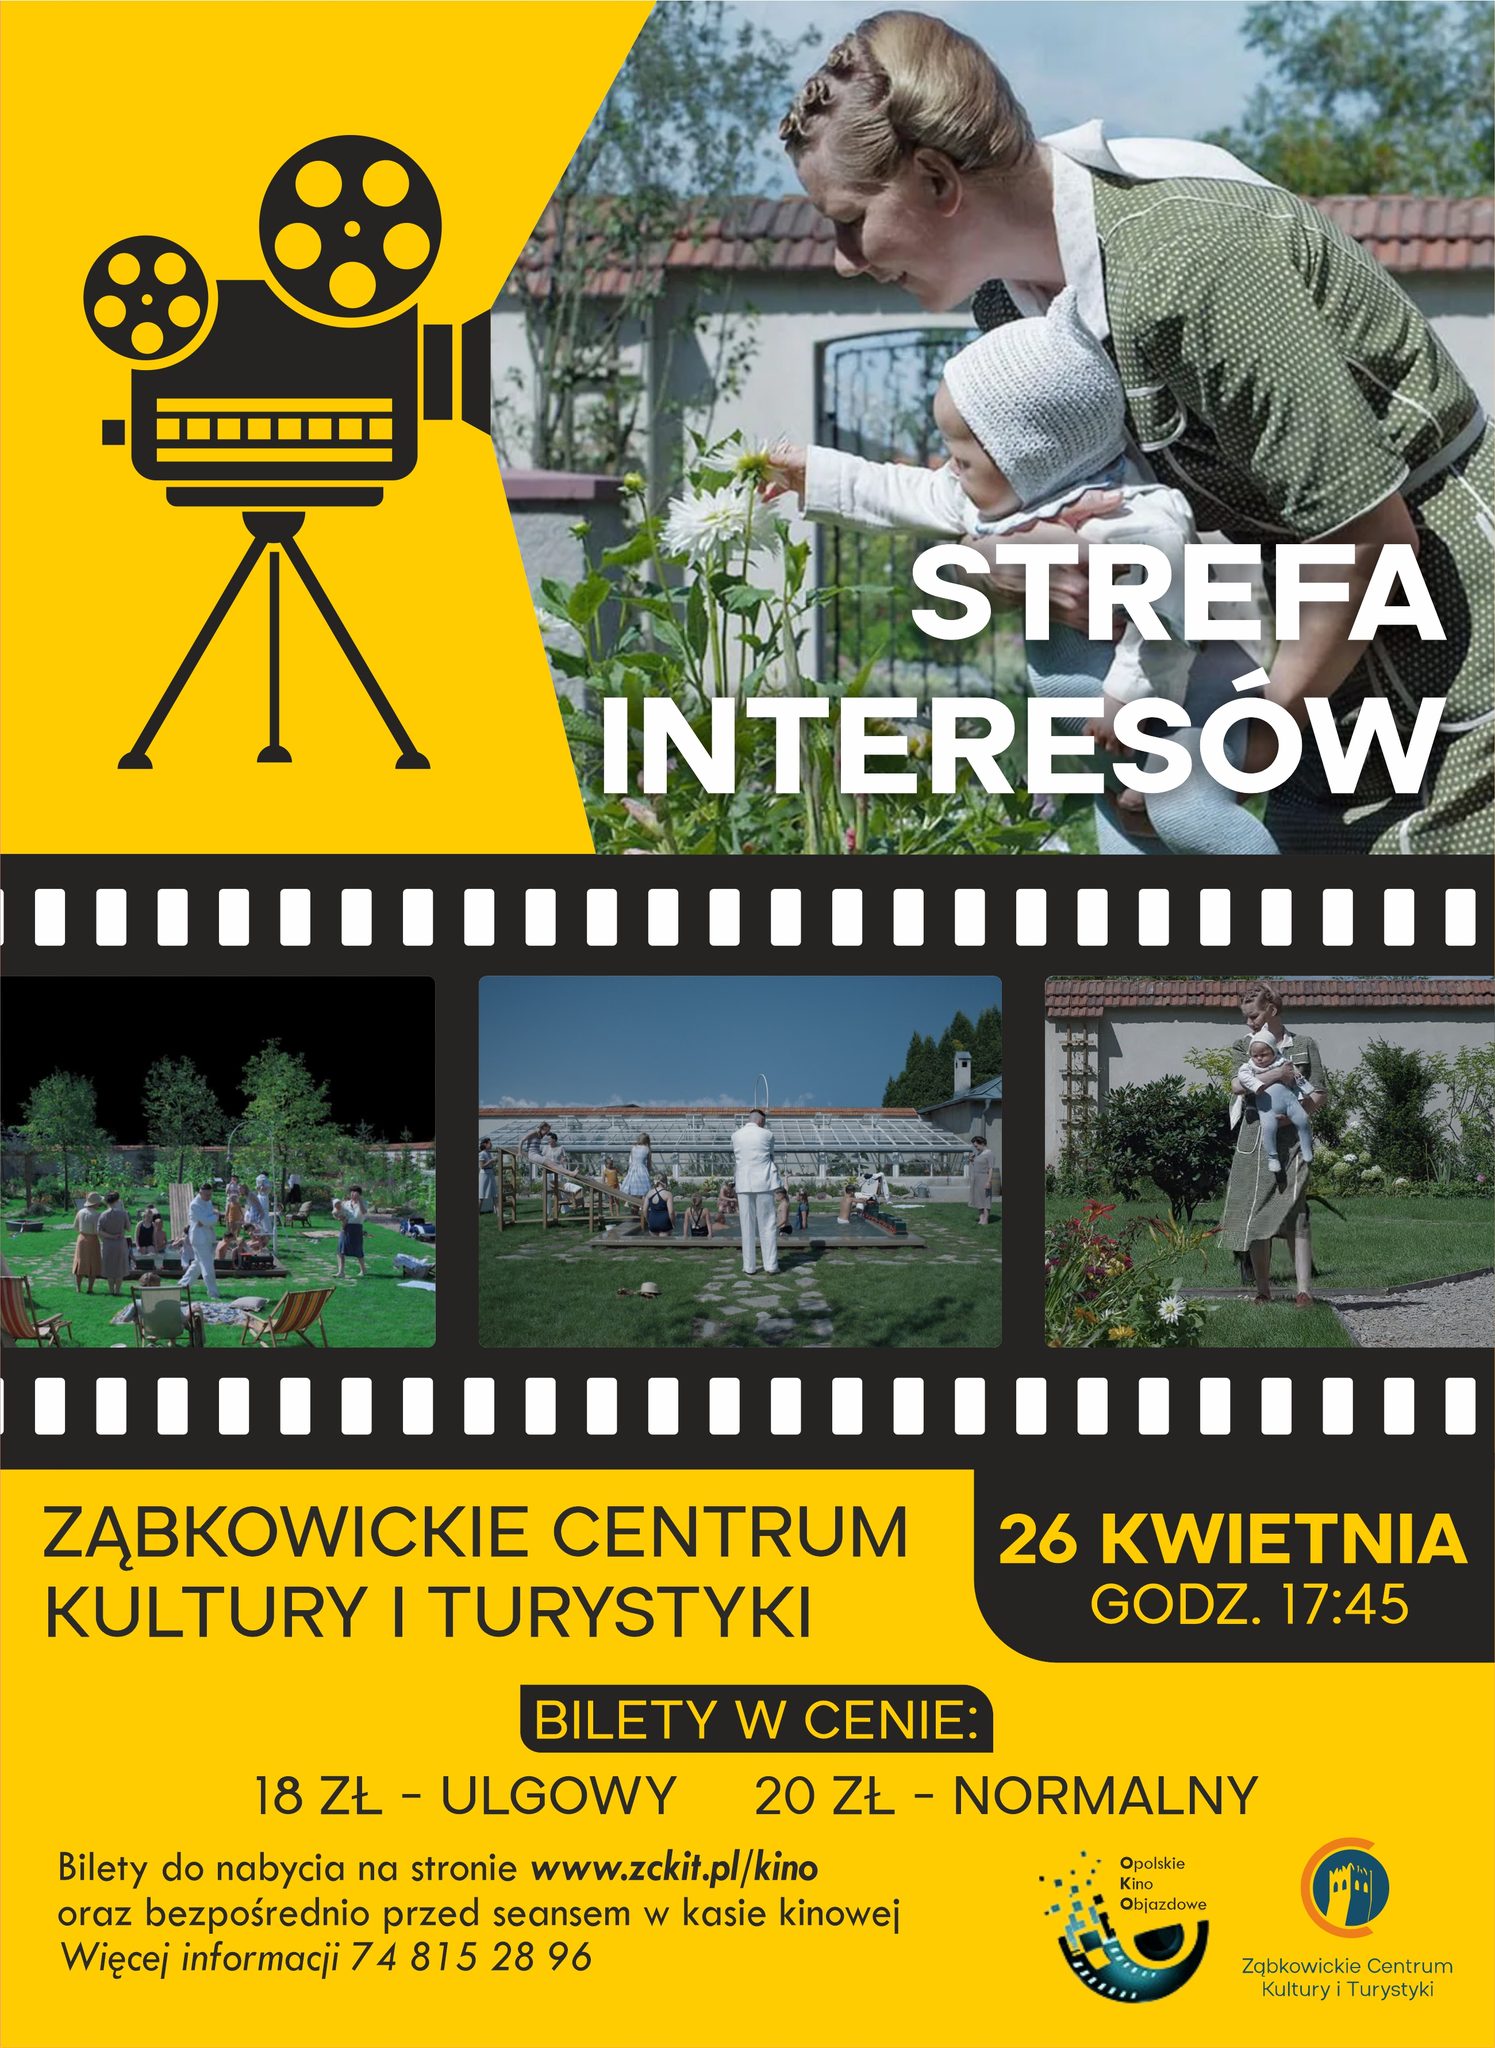 Plakat informujący o premierze filmu "Strefa Interesów" 26 kwietnia o godzinie 17:45 w Ząbkowickim Centrum Kultury i Turystyki.